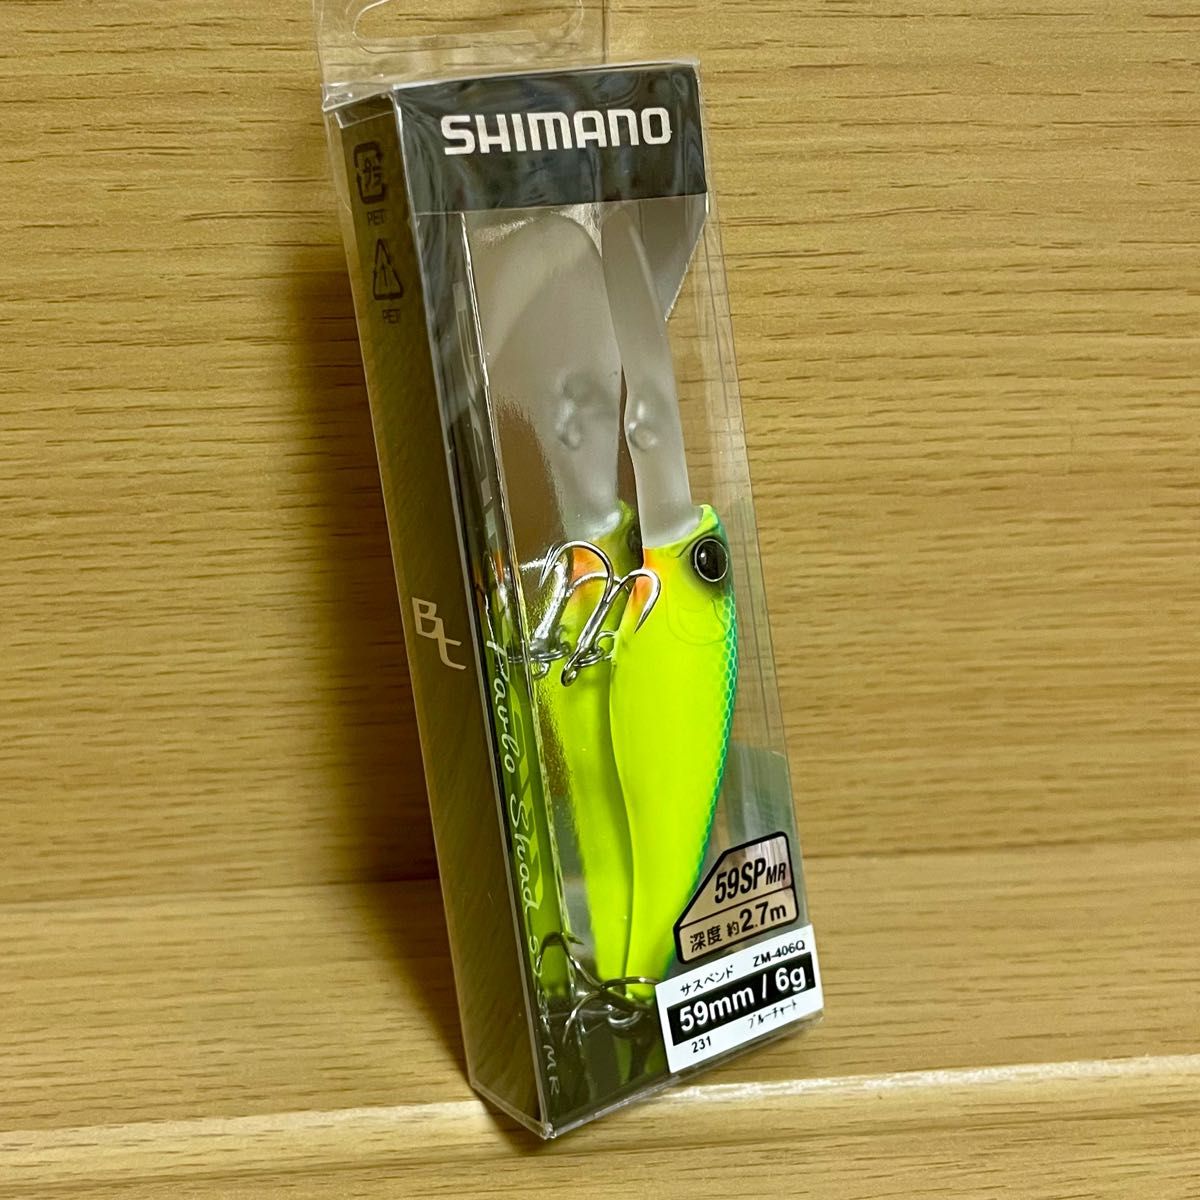 SHIMANO (シマノ) バンタム パブロシャッド 59SPMR (231)